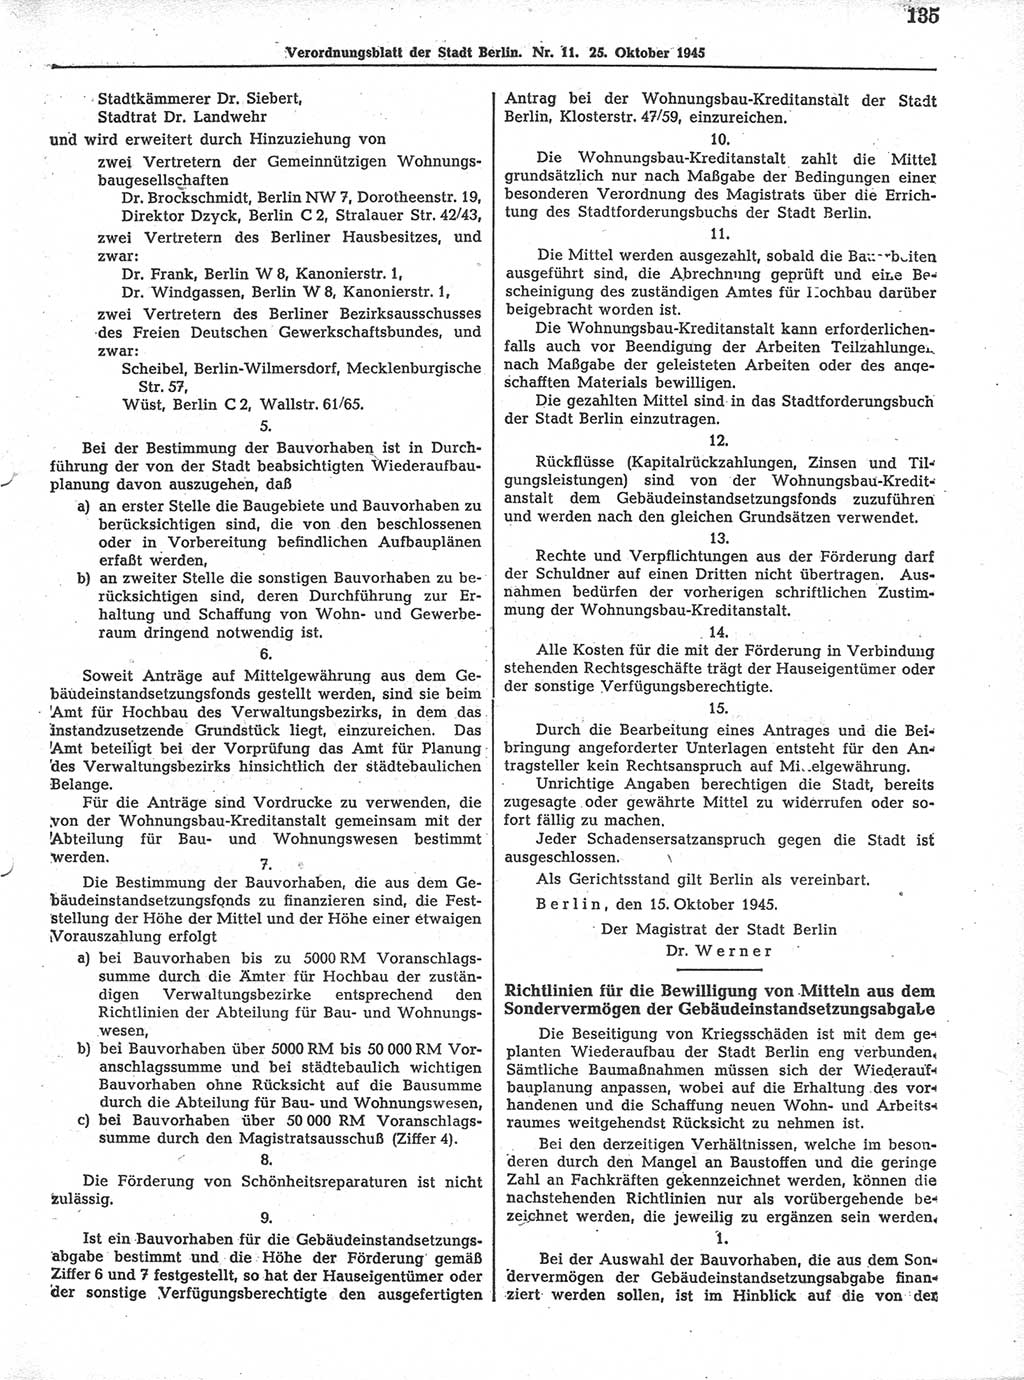 Verordnungsblatt (VOBl.) der Stadt Berlin 1945, Seite 135 (VOBl. Bln. 1945, S. 135)